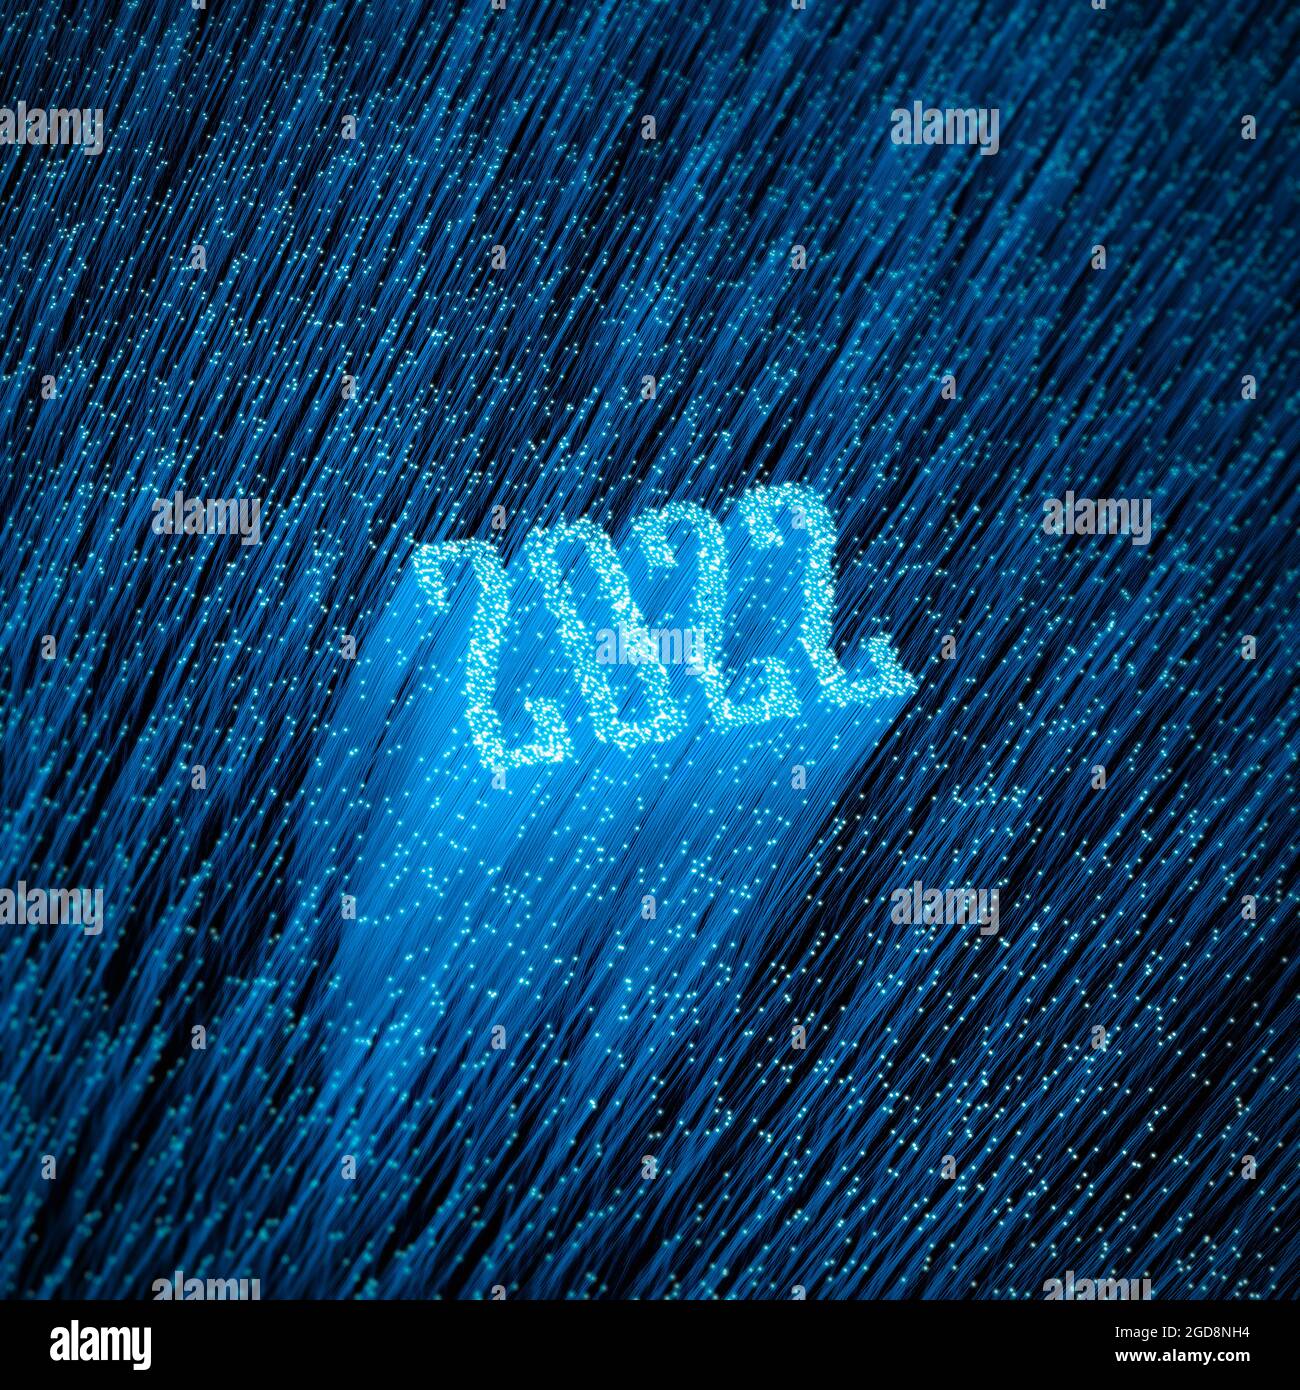 Faseroptik Jahr 2022 Konzept - 3D-Darstellung von glühenden optischen Fasern, die Jahr 2022 bilden Text Stockfoto